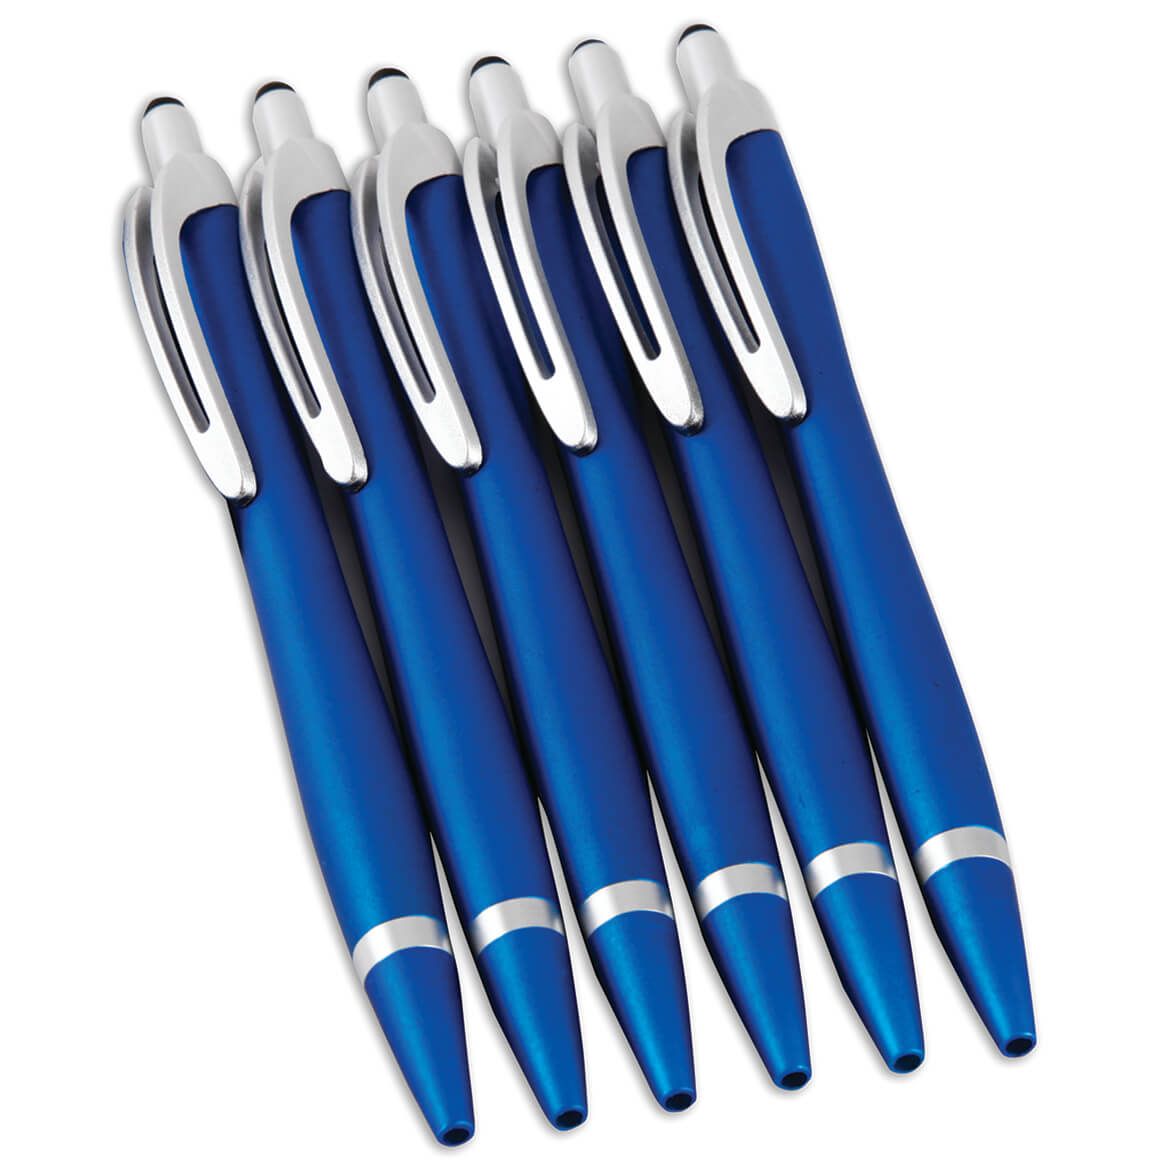 Germ-Resistant Pens, Set of 6 + '-' + 371449